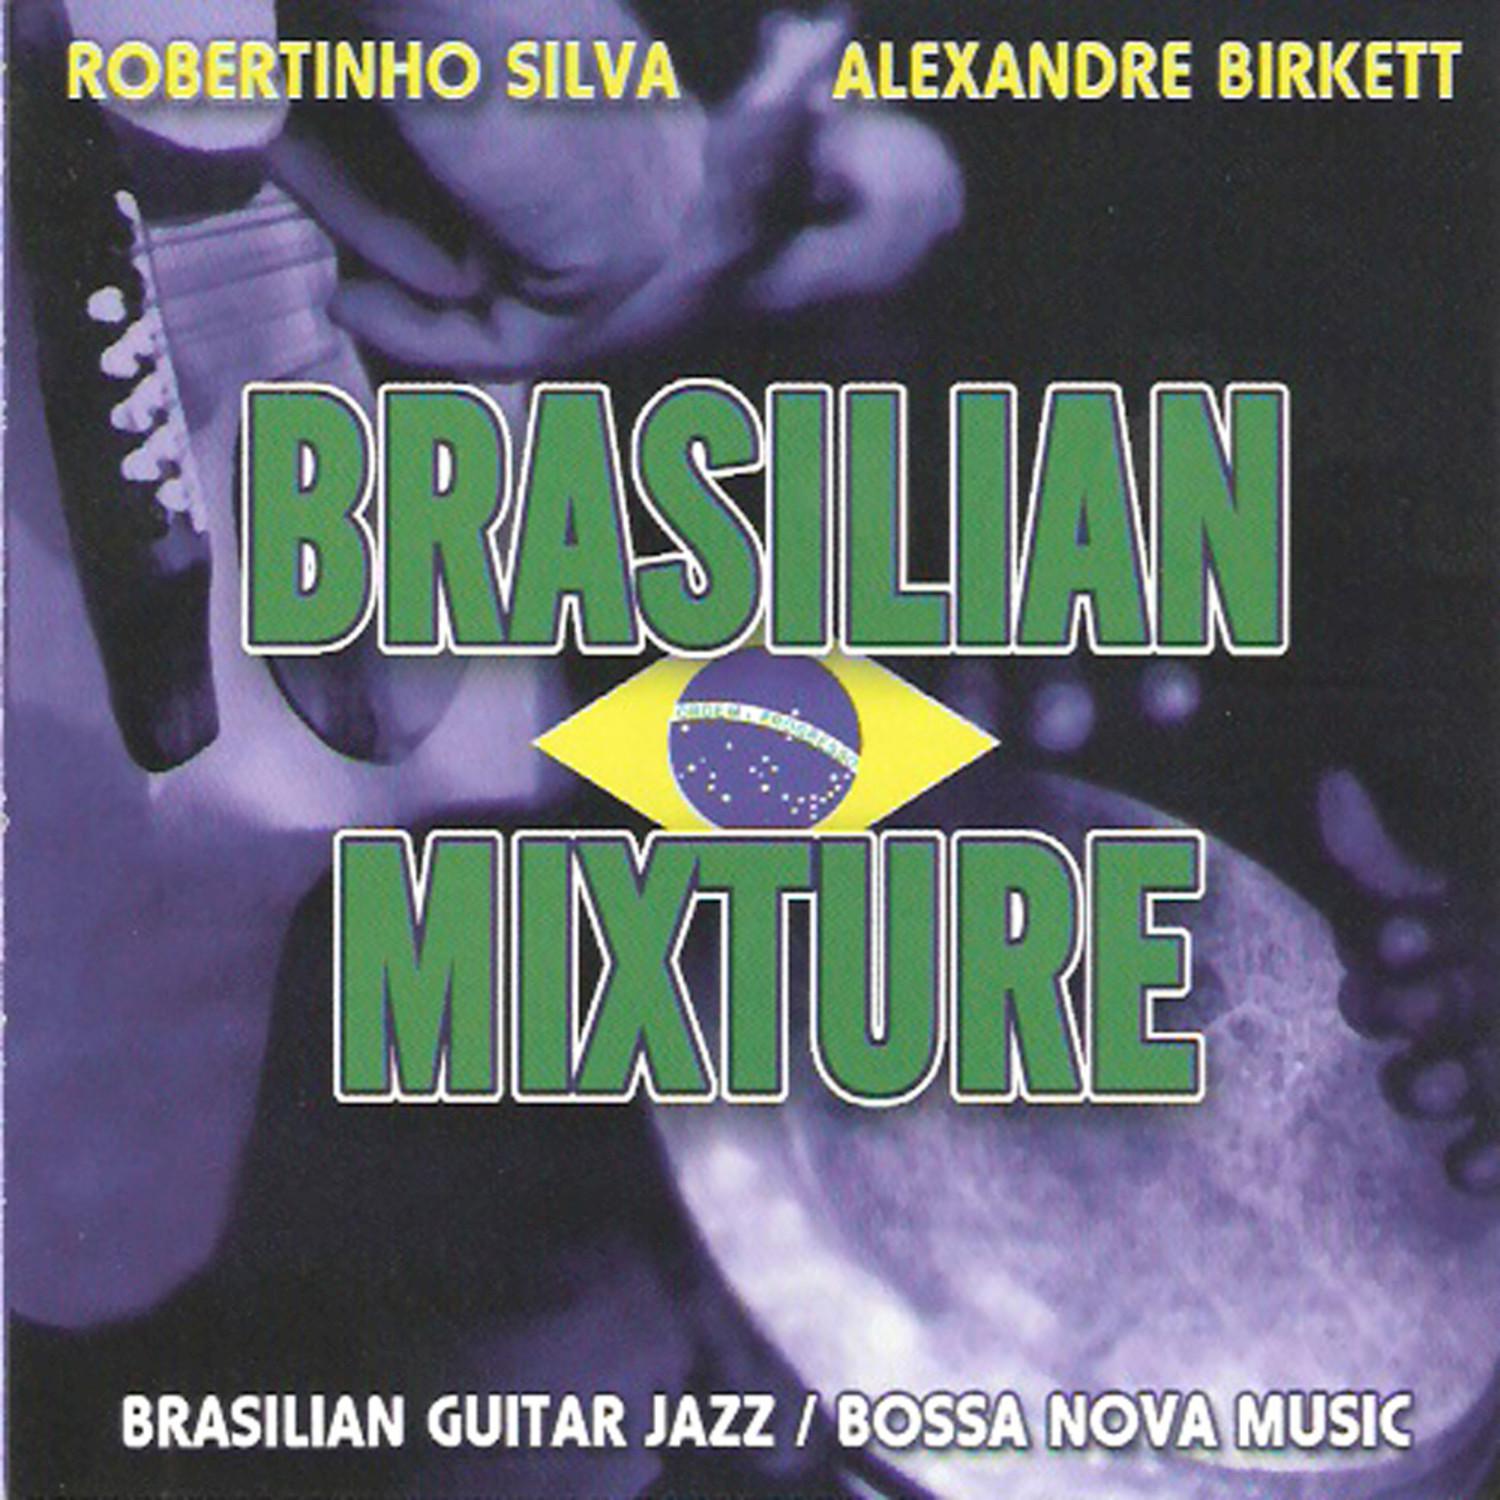 Alexandre Birkett - Rio Sao Francisco